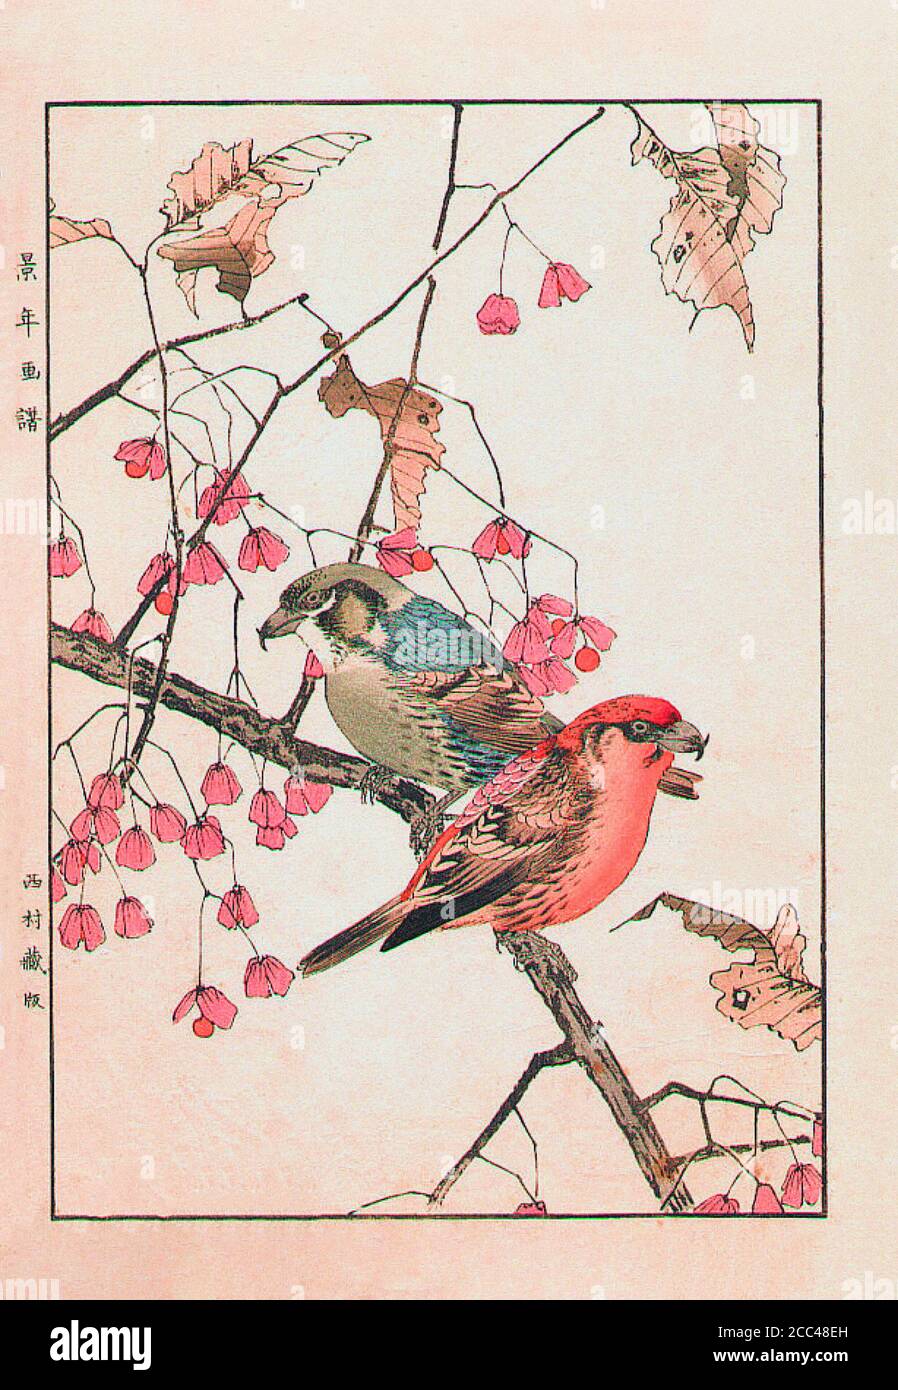 Imao keinen: Keinen Kacho Gafu (Four Seasons Bird and Flower Alben); Crossbill. Japan. 1892 Imao keinen (1845 – 1924) war ein japanischer Maler und Prin Stockfoto